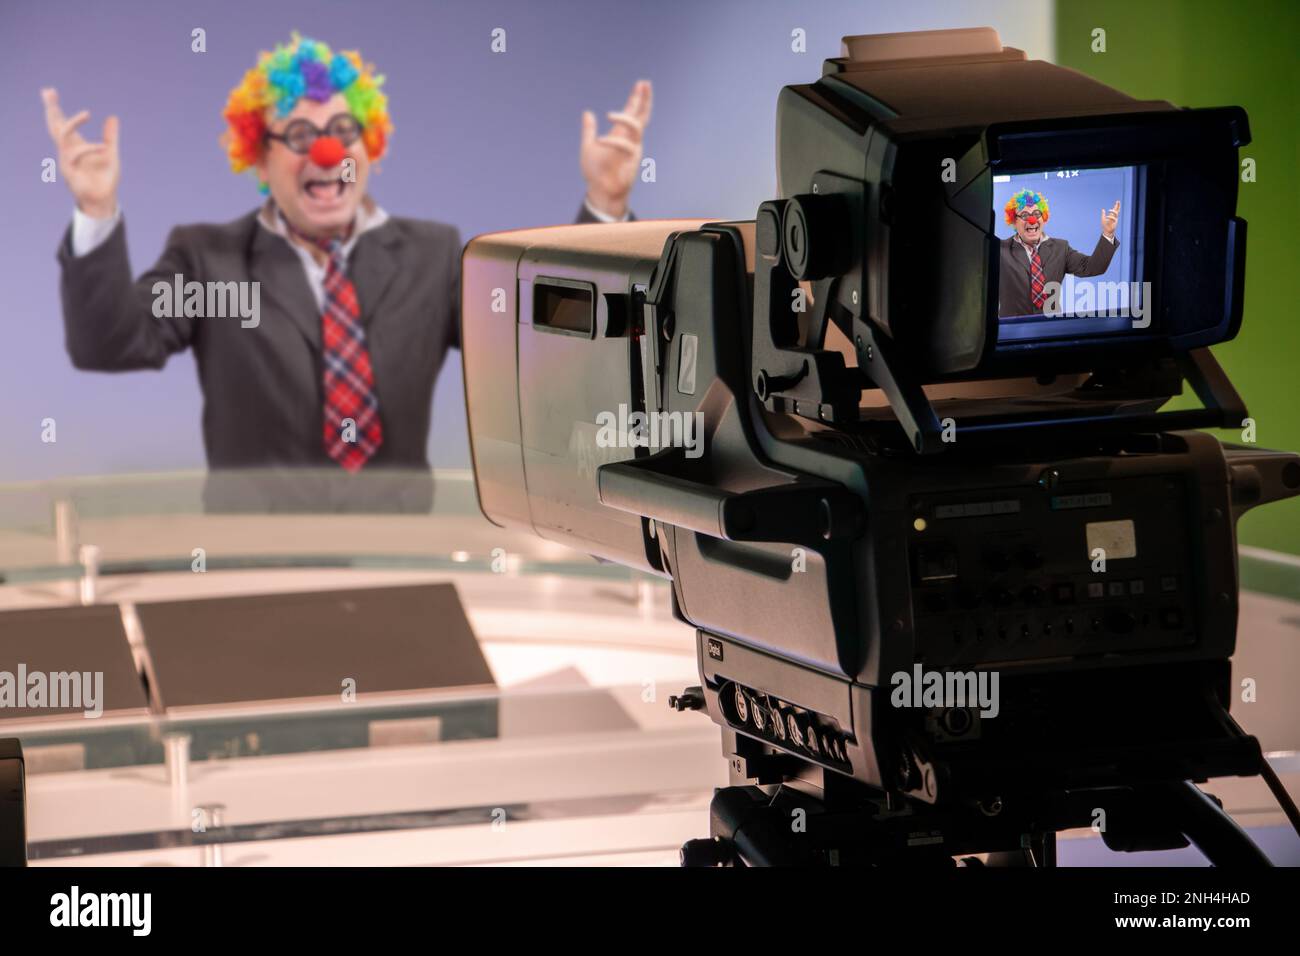 Un uomo emozionale in un costume clown in uno studio televisivo Foto Stock